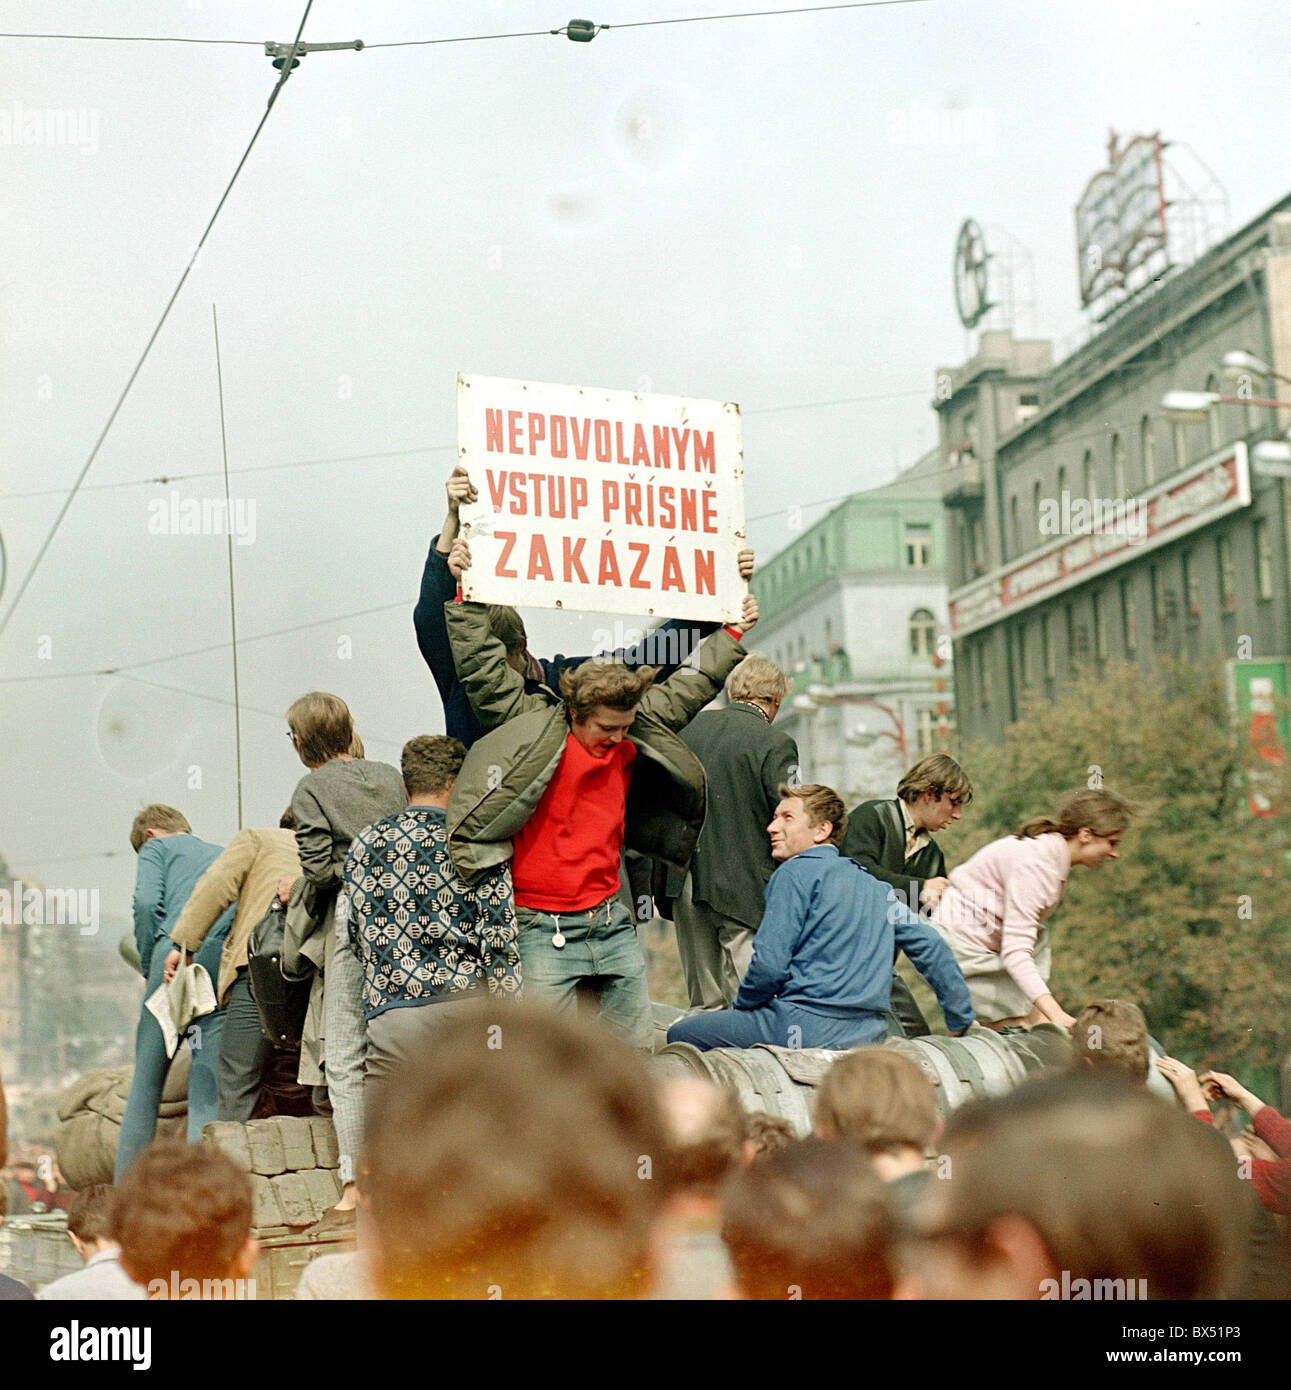 Soviet tank, Wenceslas Square, Prague, protest Stock Photo